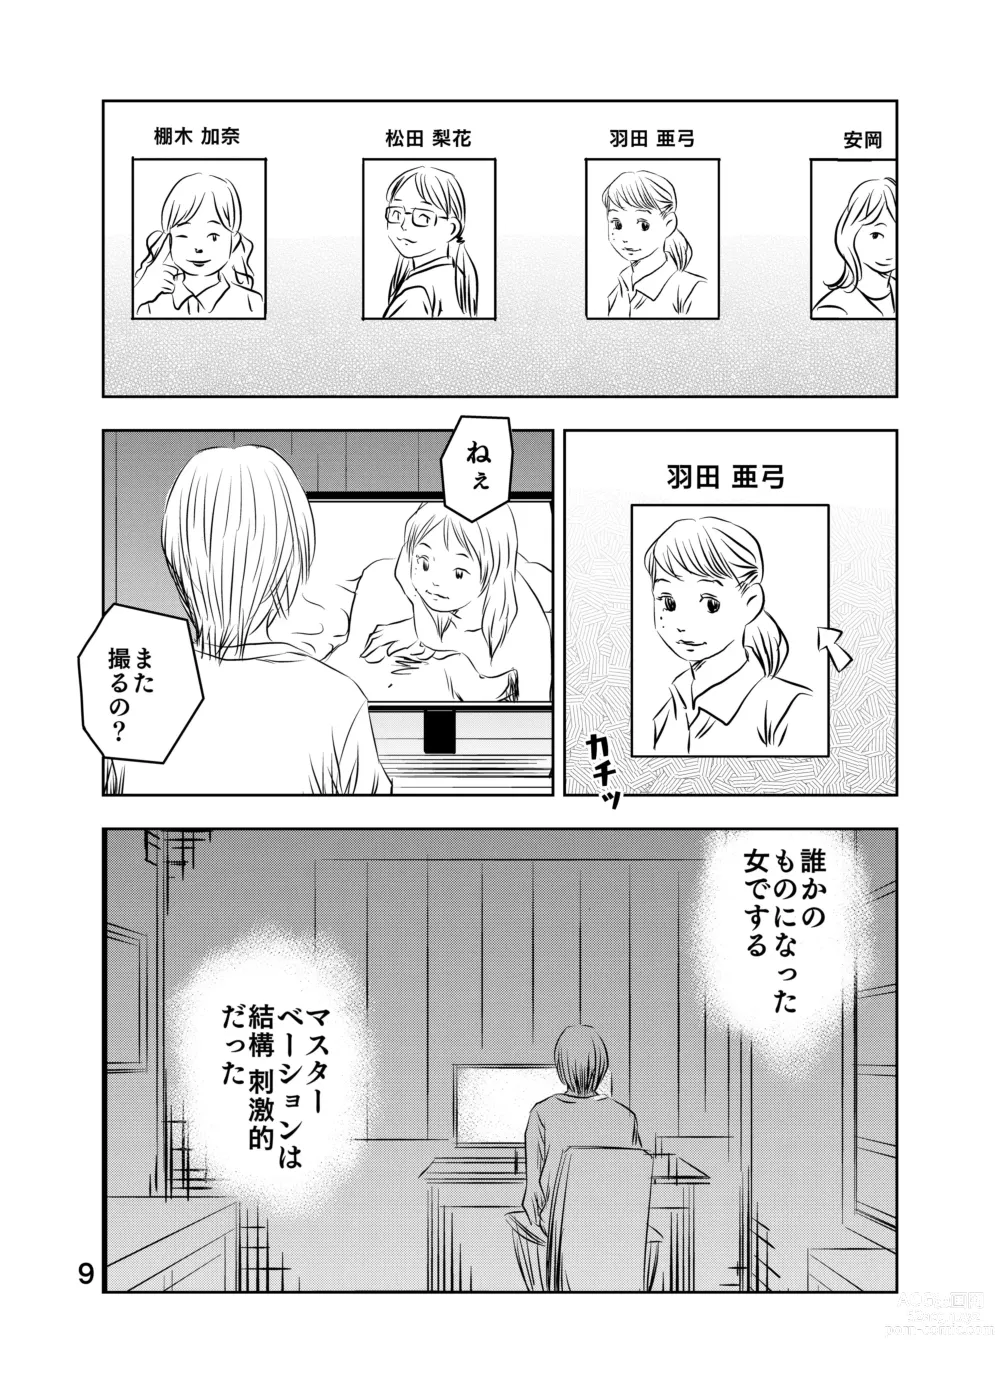 Page 10 of doujinshi Zurui Hito-tachi 2